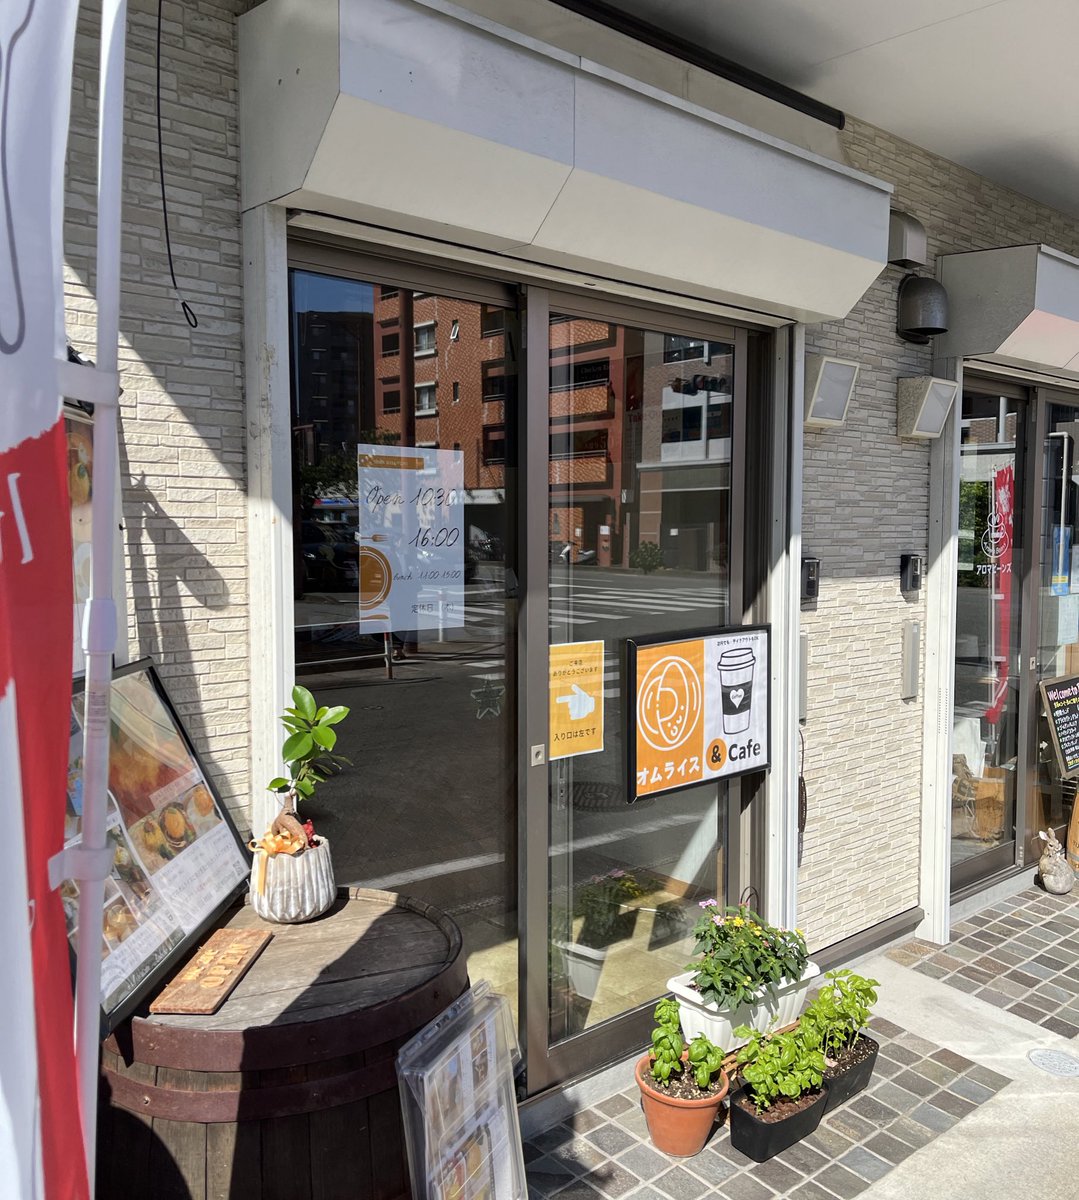 オムライス＆Cafe 
Anhelo（アネーロ）

野間にあるオムライス専門店&カフェ

今年3月オープン🎉
玉子甘味とソースの酸味最高だった！

玉子の柔らかさも🤤👍

コーヒーフロートもおすすめ
この夏、かなり売れそう！

高宮行くことあればぜひ！

#福岡グルメ